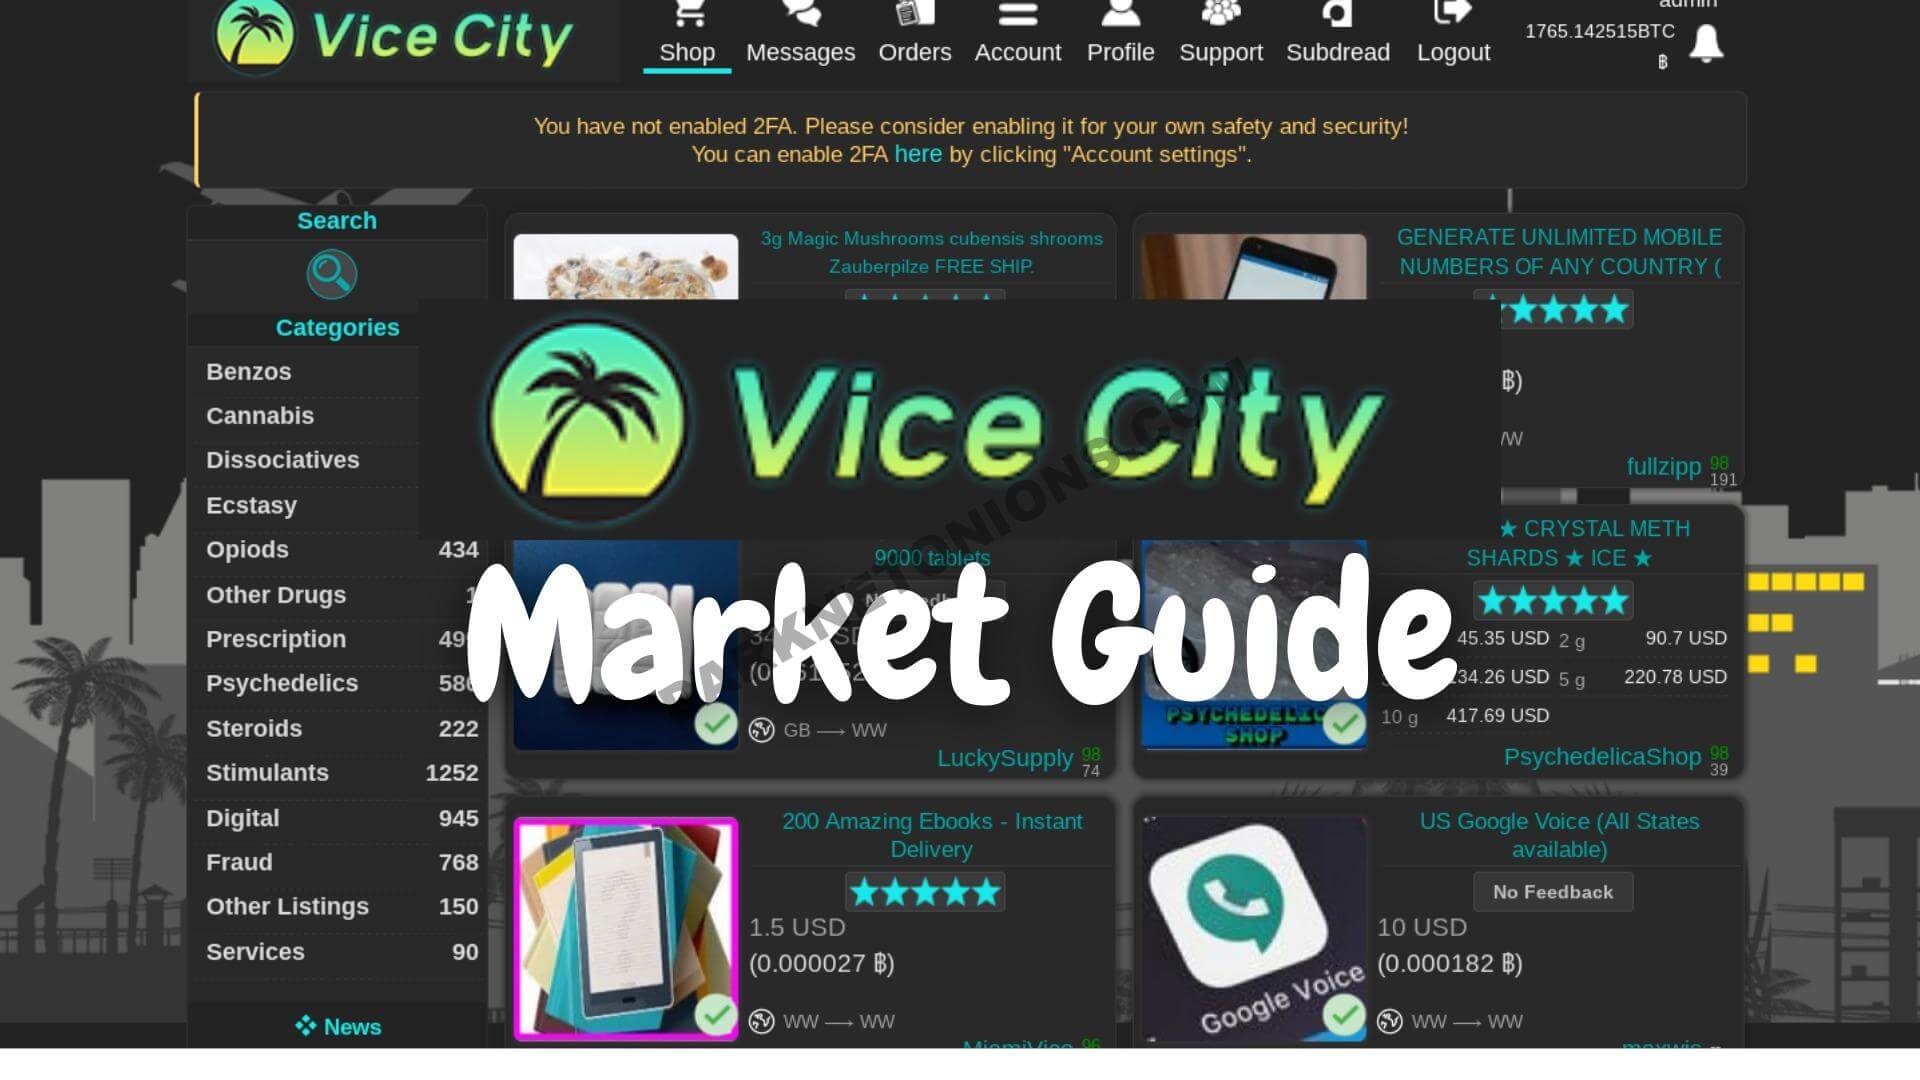 Vice City Marketplace